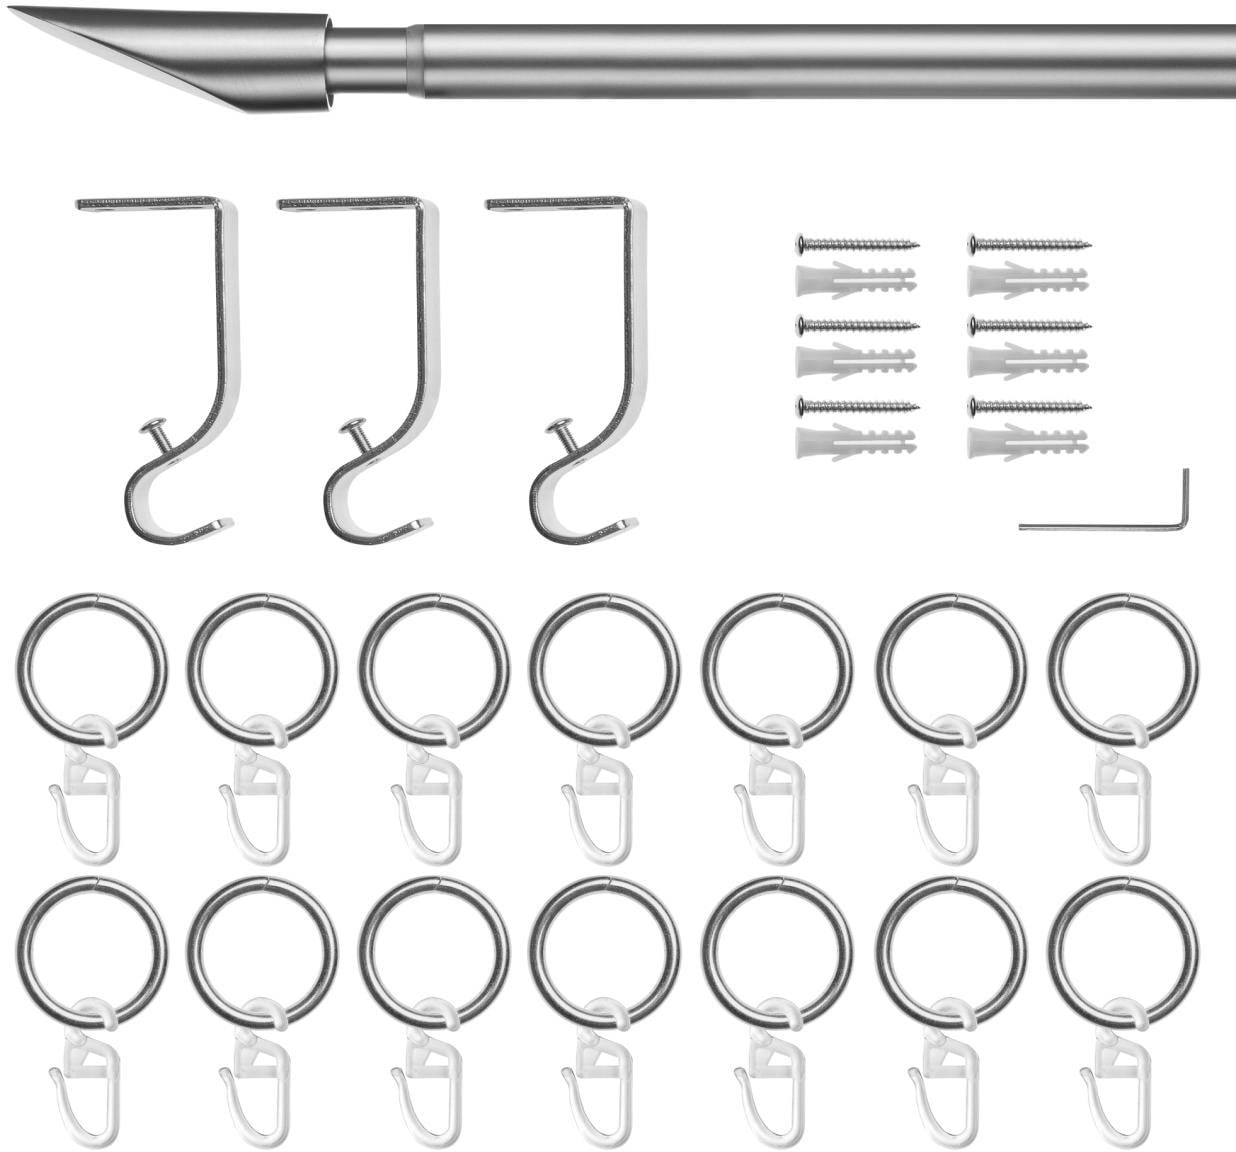 LICHTBLICK ORIGINAL Gardinenstange »Gardinenstange Lipstick, 20 mm, ausziehbar, 1 läufig 130 - 240 cm«, 1 läufig-läufig, ausziehbar, Einläufige Vorhangstange mit Ringen für Gardinen und Stores.